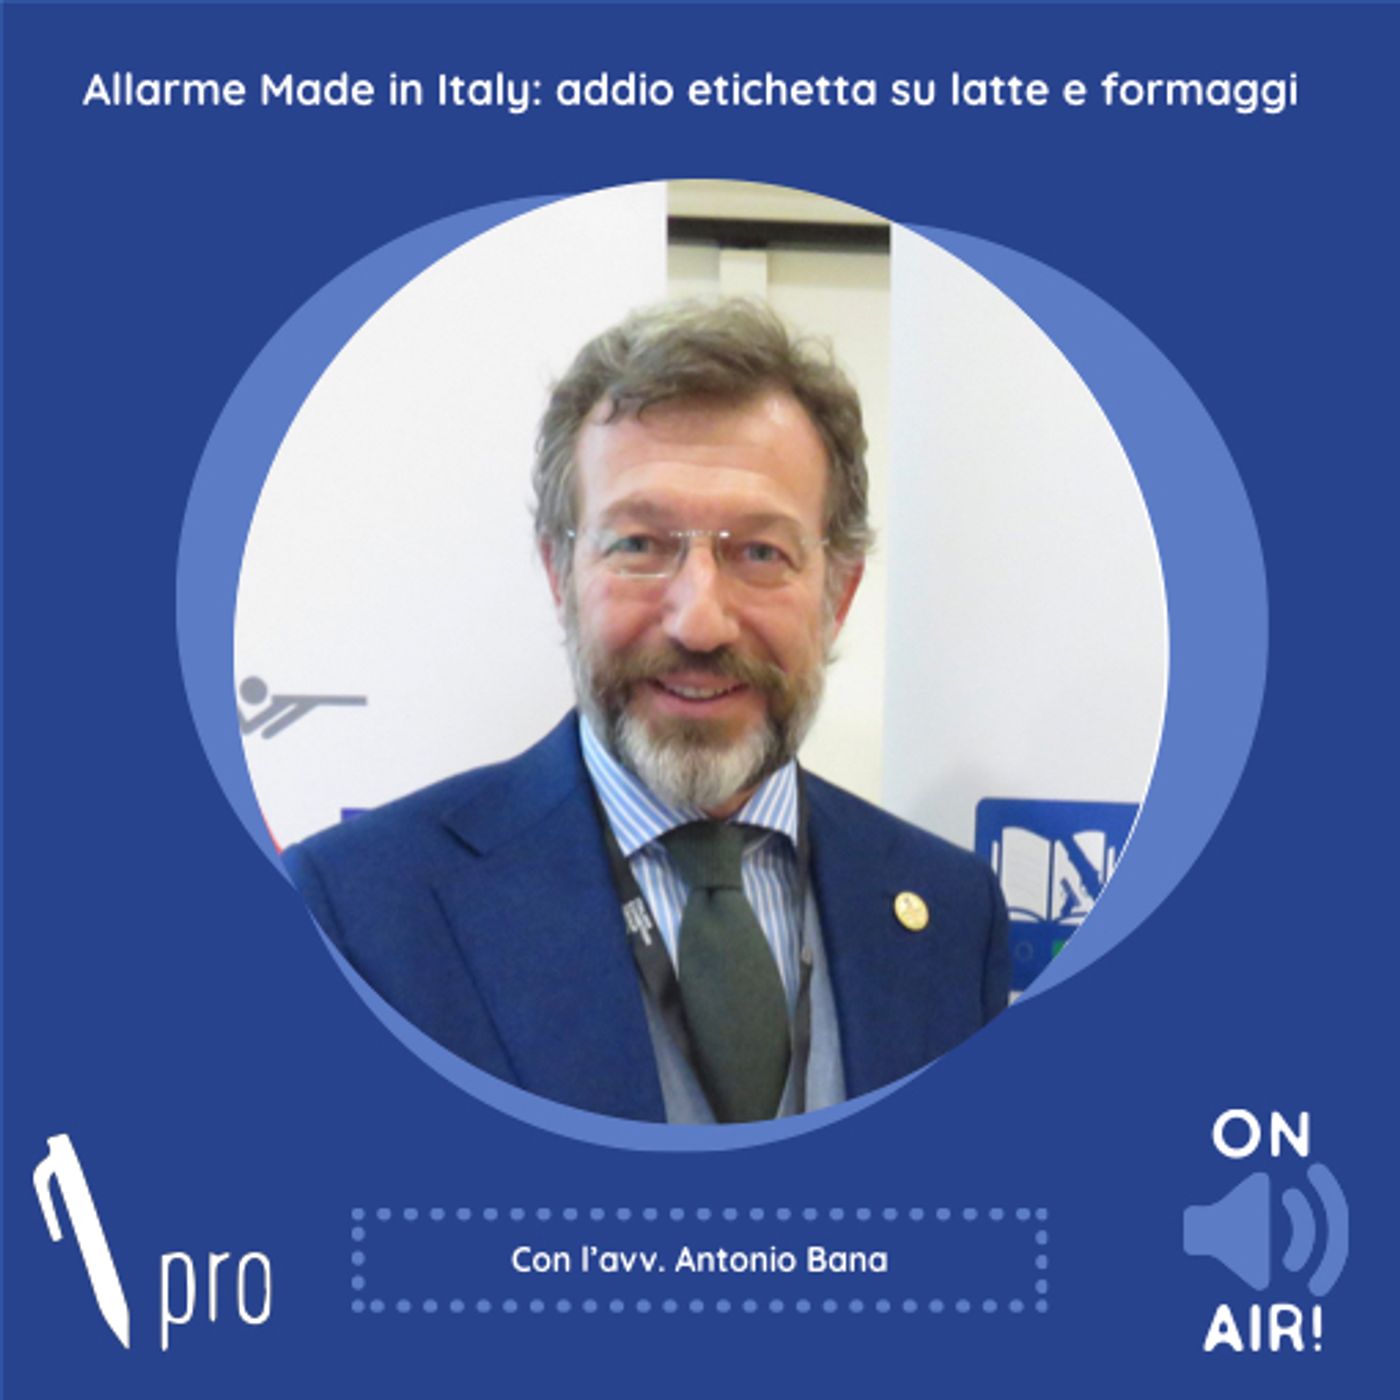 Ep. 25 - Allarme Made in Italy: addio etichetta su latte e formaggi. Con l'avv. Antonio Bana (Partner Studio Bana)